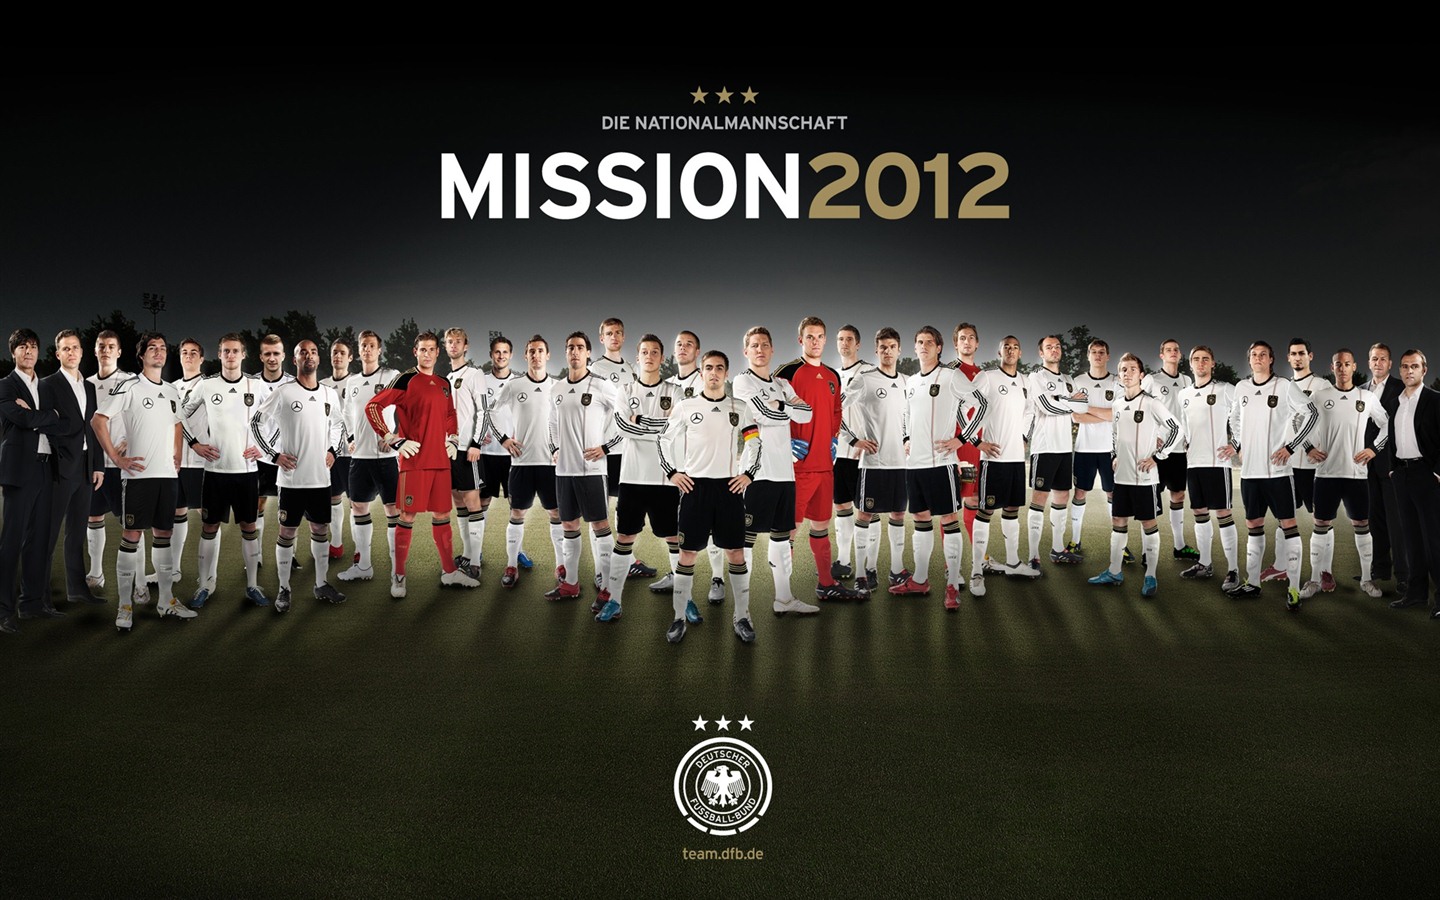 UEFA EURO 2012 欧洲足球锦标赛 高清壁纸(二)5 - 1440x900